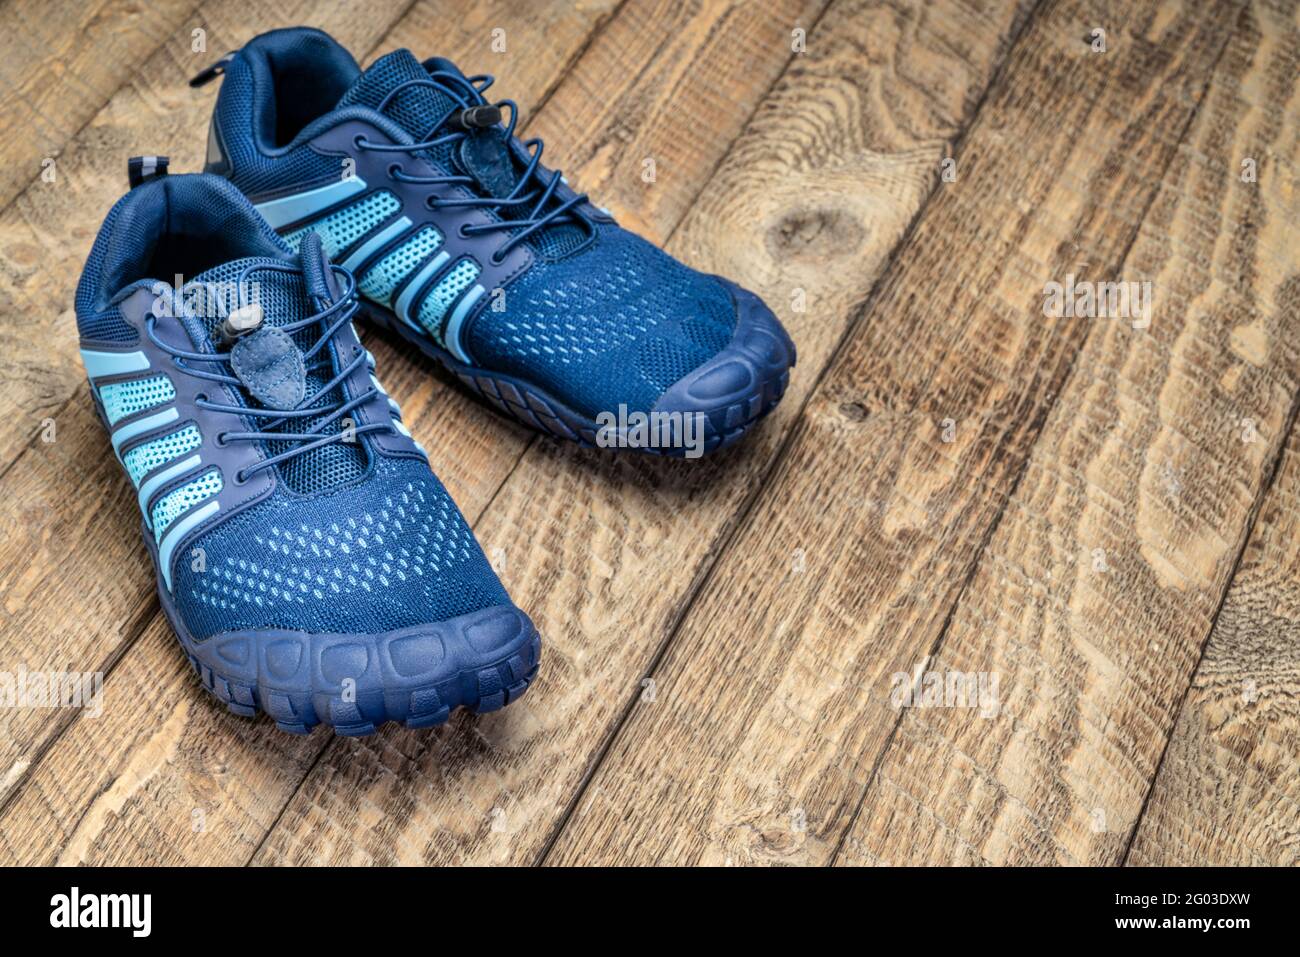 zapatillas de running y entrenamiento cruzado descalzo sobre un fondo rústico de madera Foto de stock